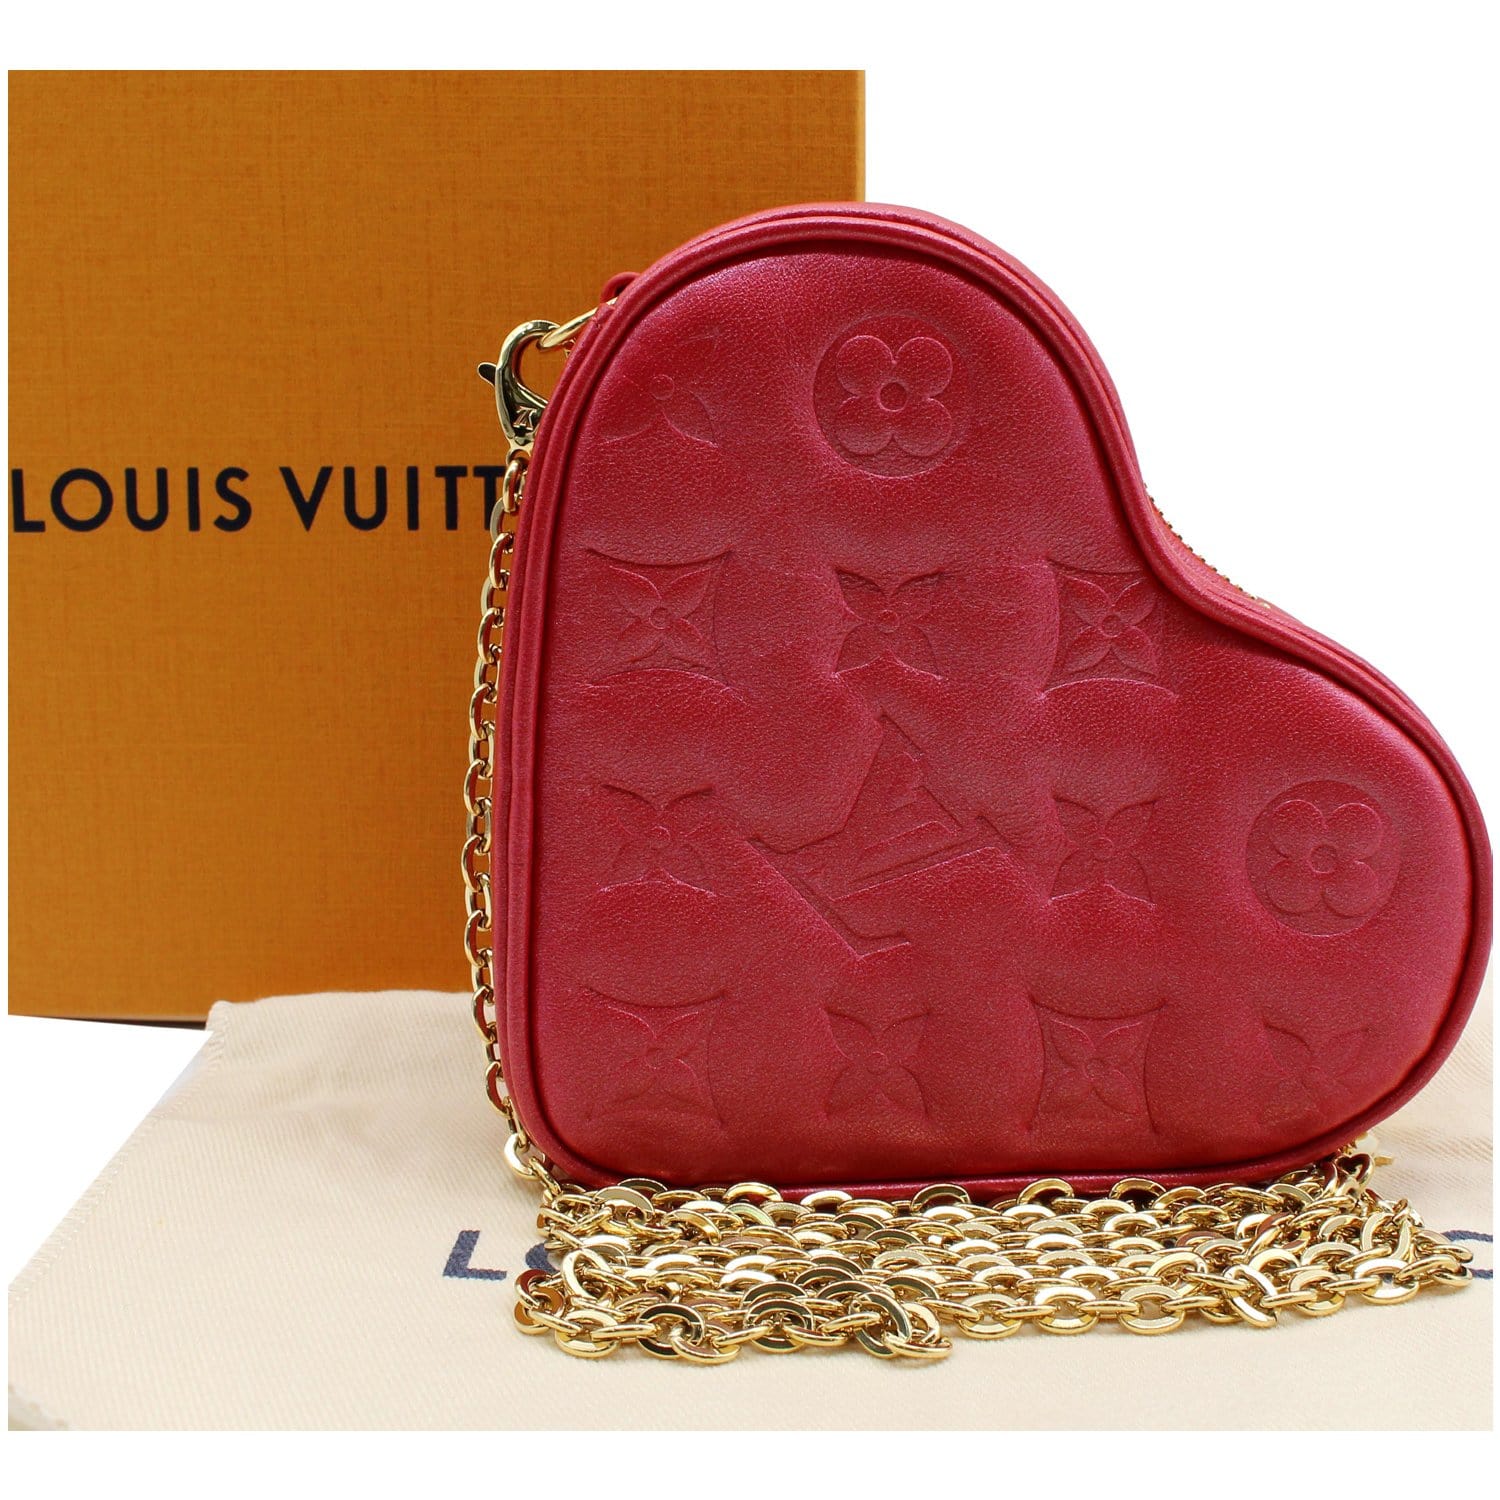 Louis Vuitton Pink Degrade Monogram Valentine's Day Heart Wallet